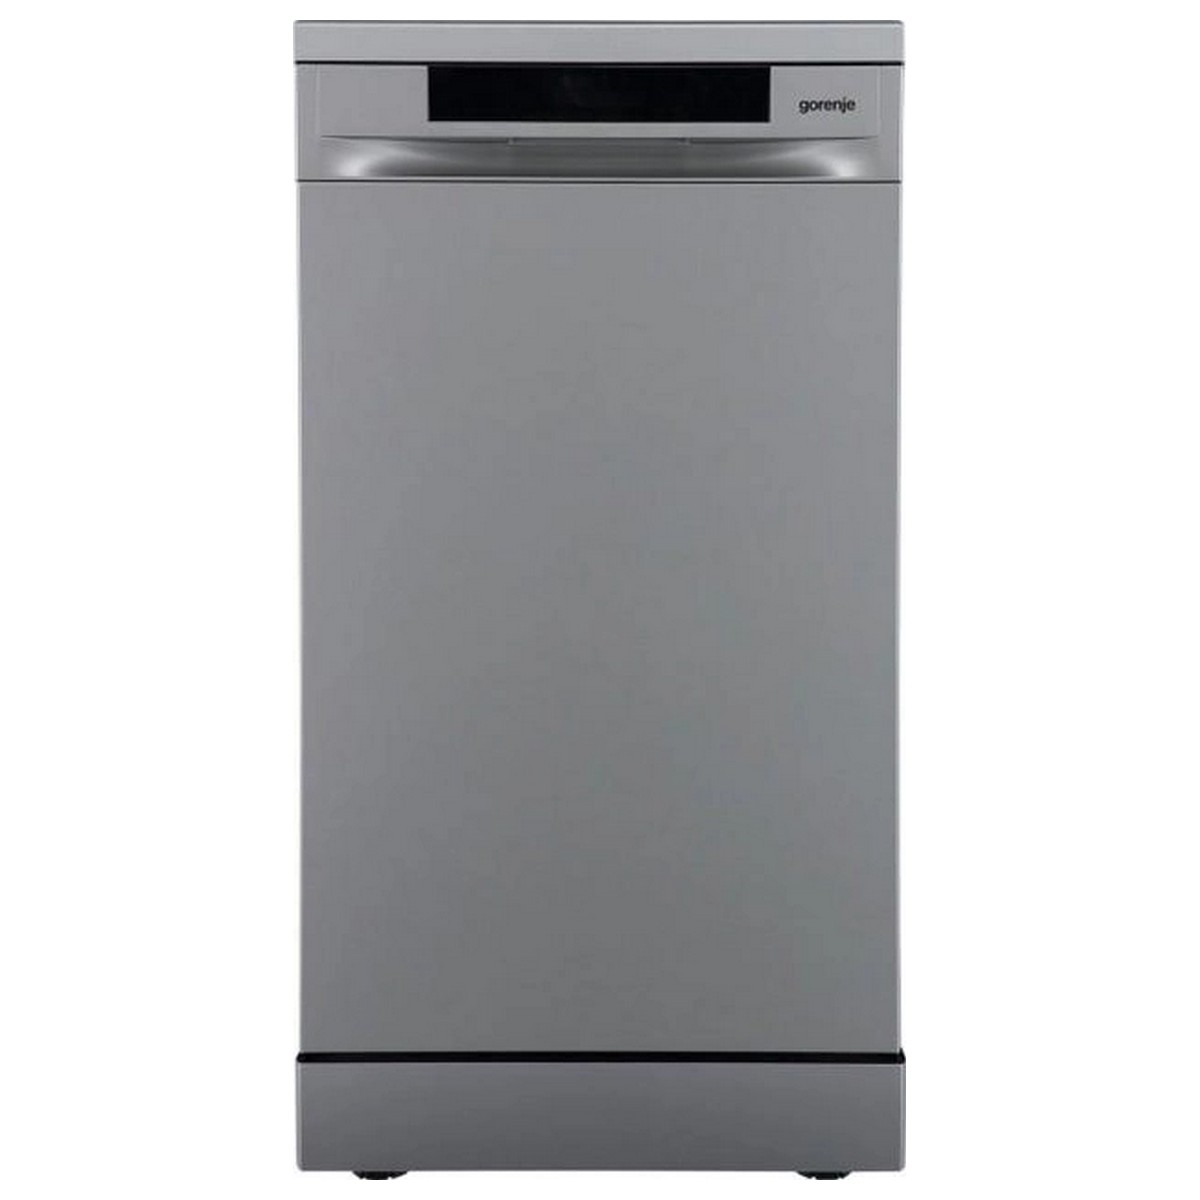 Посудомоечная машина Gorenje, 11компл., A+++, 45см, дисплей, 3 корзины, AquaStop, Инвертор, серый